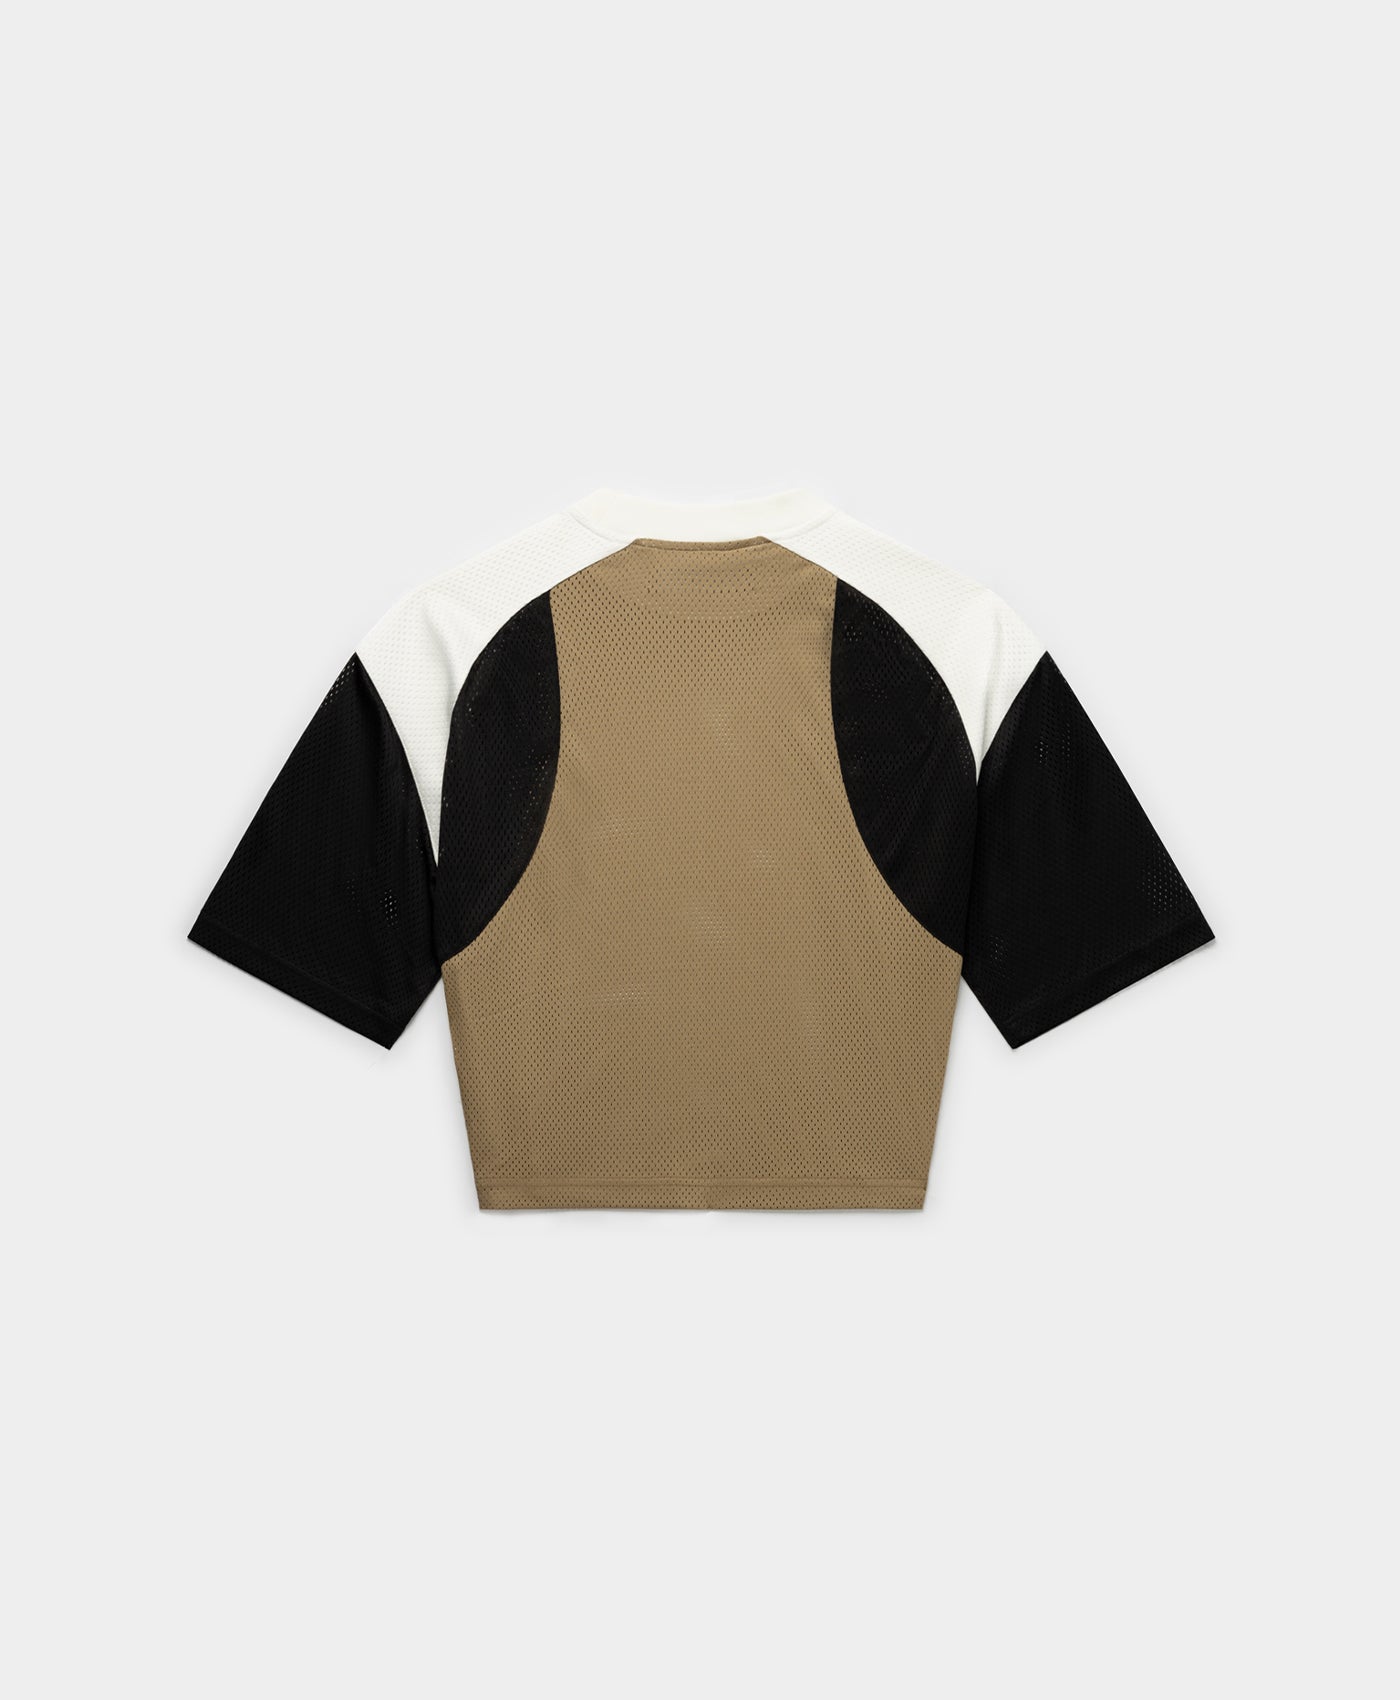 DP - Black Twill Egret Piper T-Shirt - Packshot - Rear